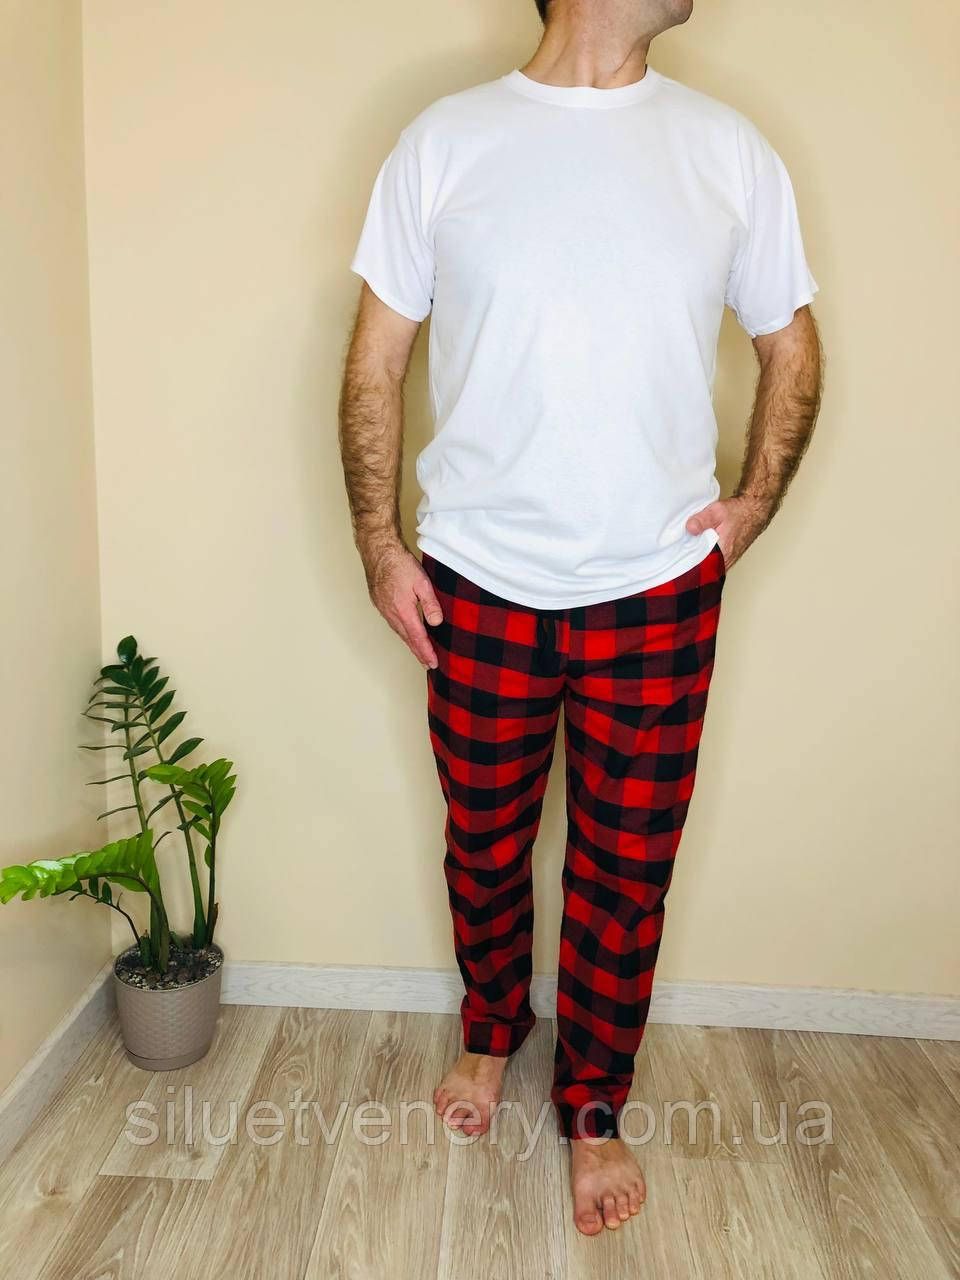 Домашня піжама для чоловіків COSY із фланелі (штани+футболка біла) червоно/чорні - купить в магазине Силуэт Венеры по цене 950 грн.